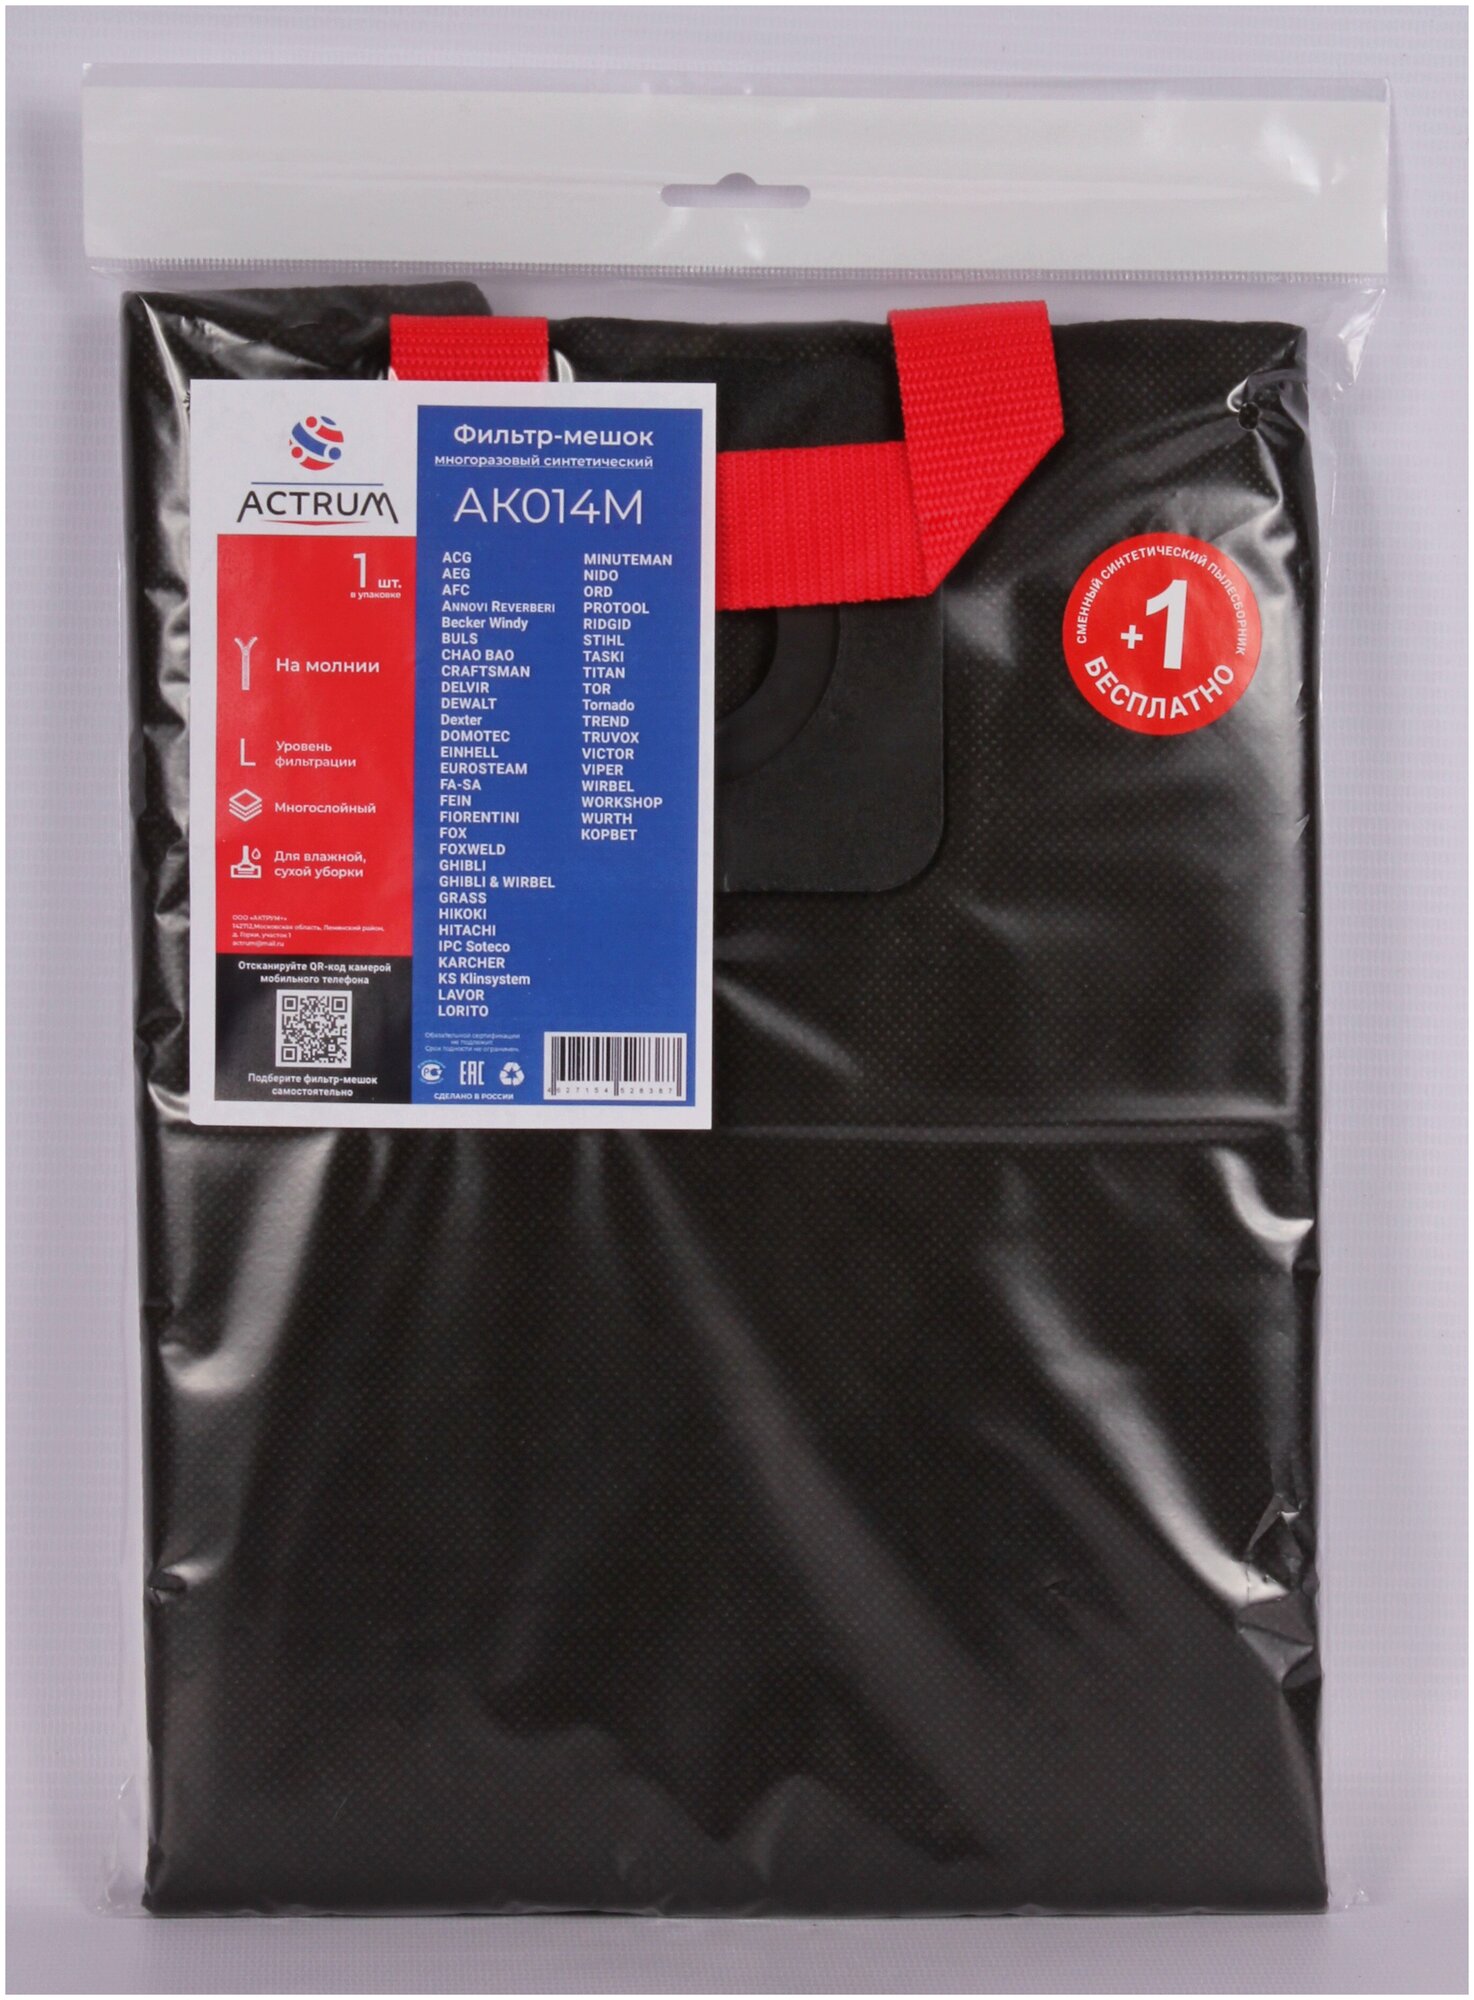 Профессиональный многоразовый мешок-пылесборник АК014M для промышленных пылесосов DEXTER, HITACHI, KARCHER, STIHL + 1 сменный мешок в подарок!